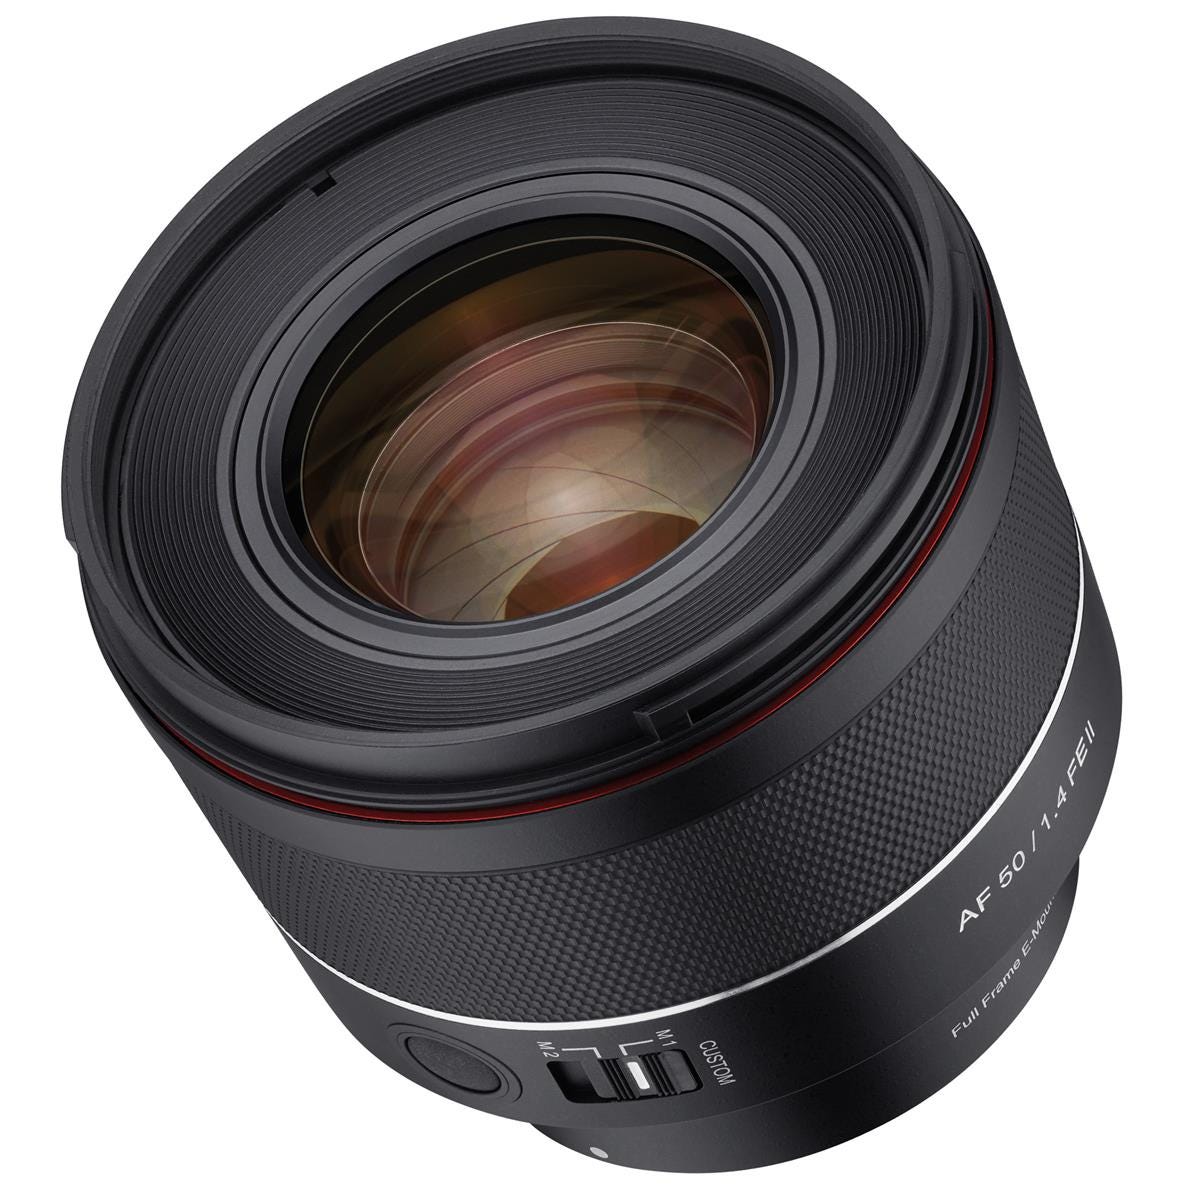 Samyang 50mm f/1.4 FE II Lens for Sony E